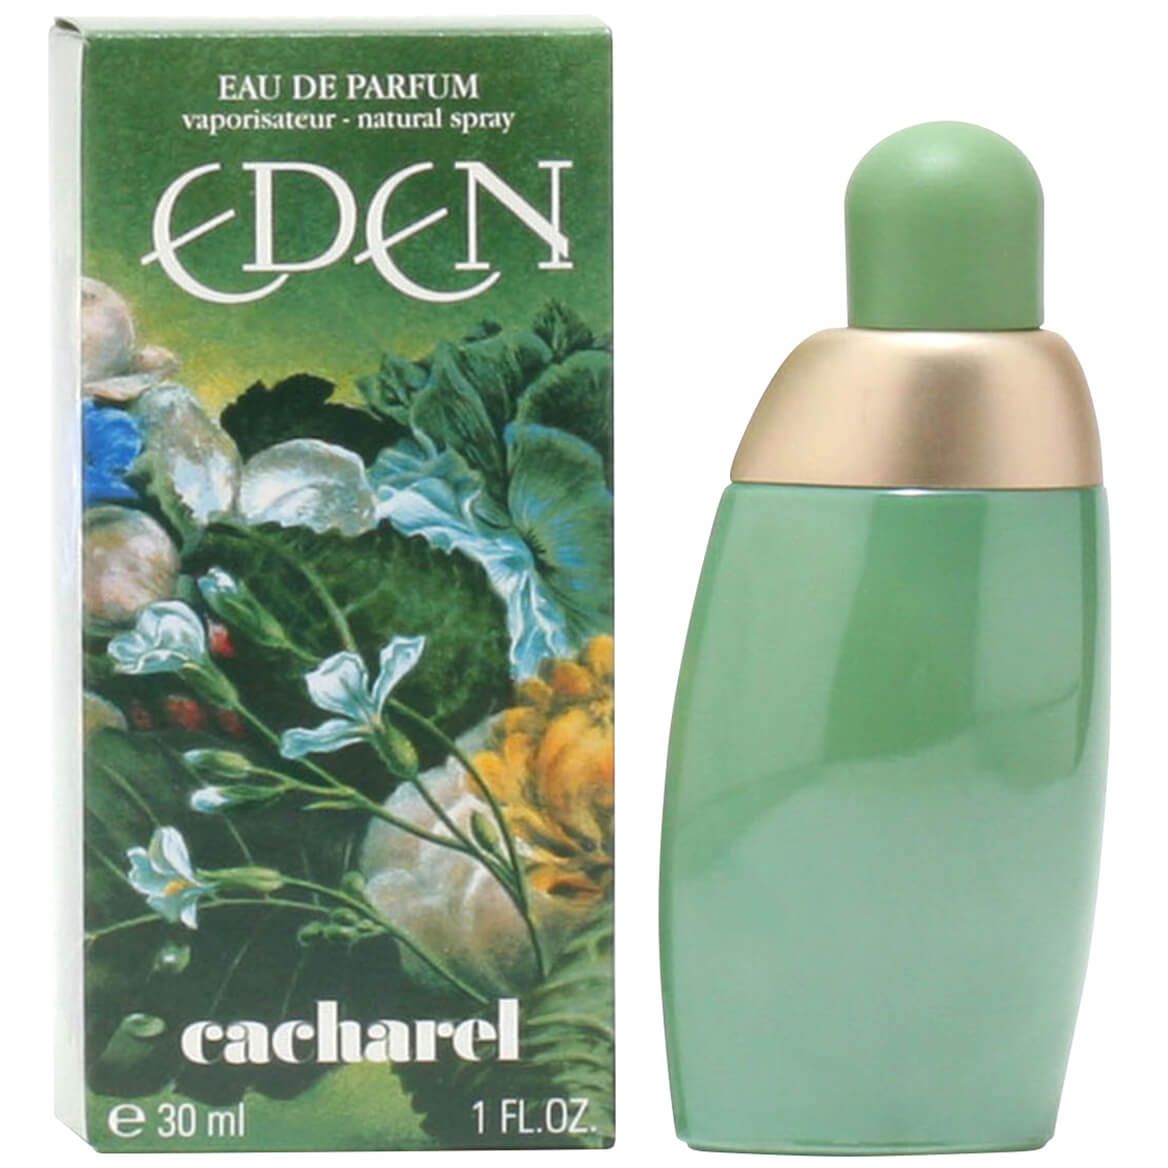 Eden by Cacharel for Women EDP, 1 fl. oz. + '-' + 377250